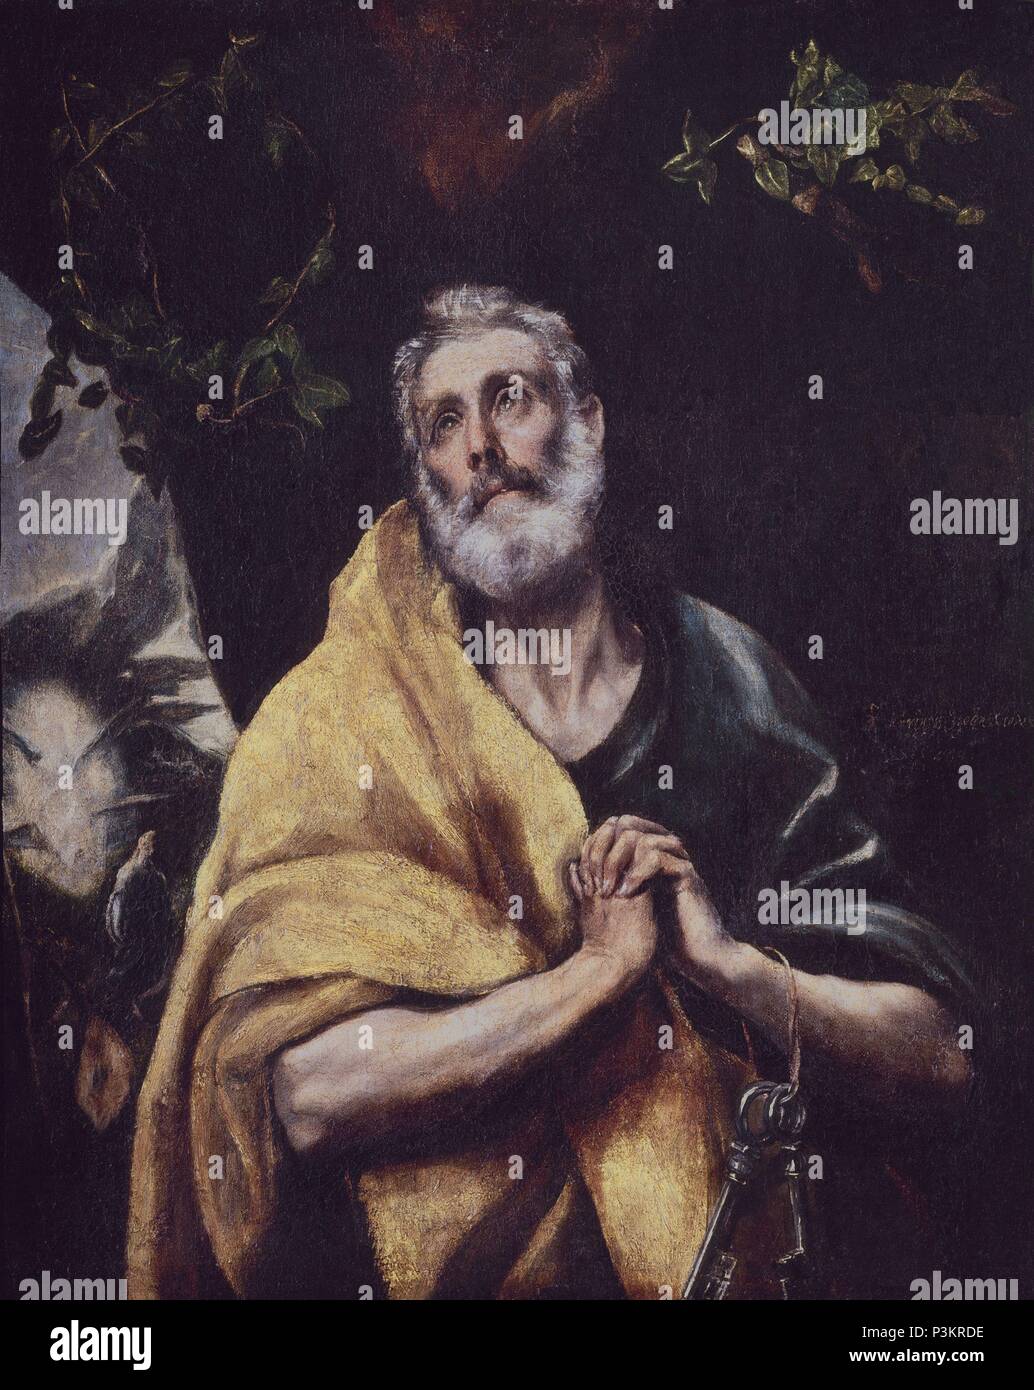 LAS LAGRIMAS DE SAN PEDRO - ANTES DE RESTAURAR. Author: El Greco (1541-1614). Location: CASA MUSEO DEL GRECO-COLECCION, TOLEDO, SPAIN. Stock Photo